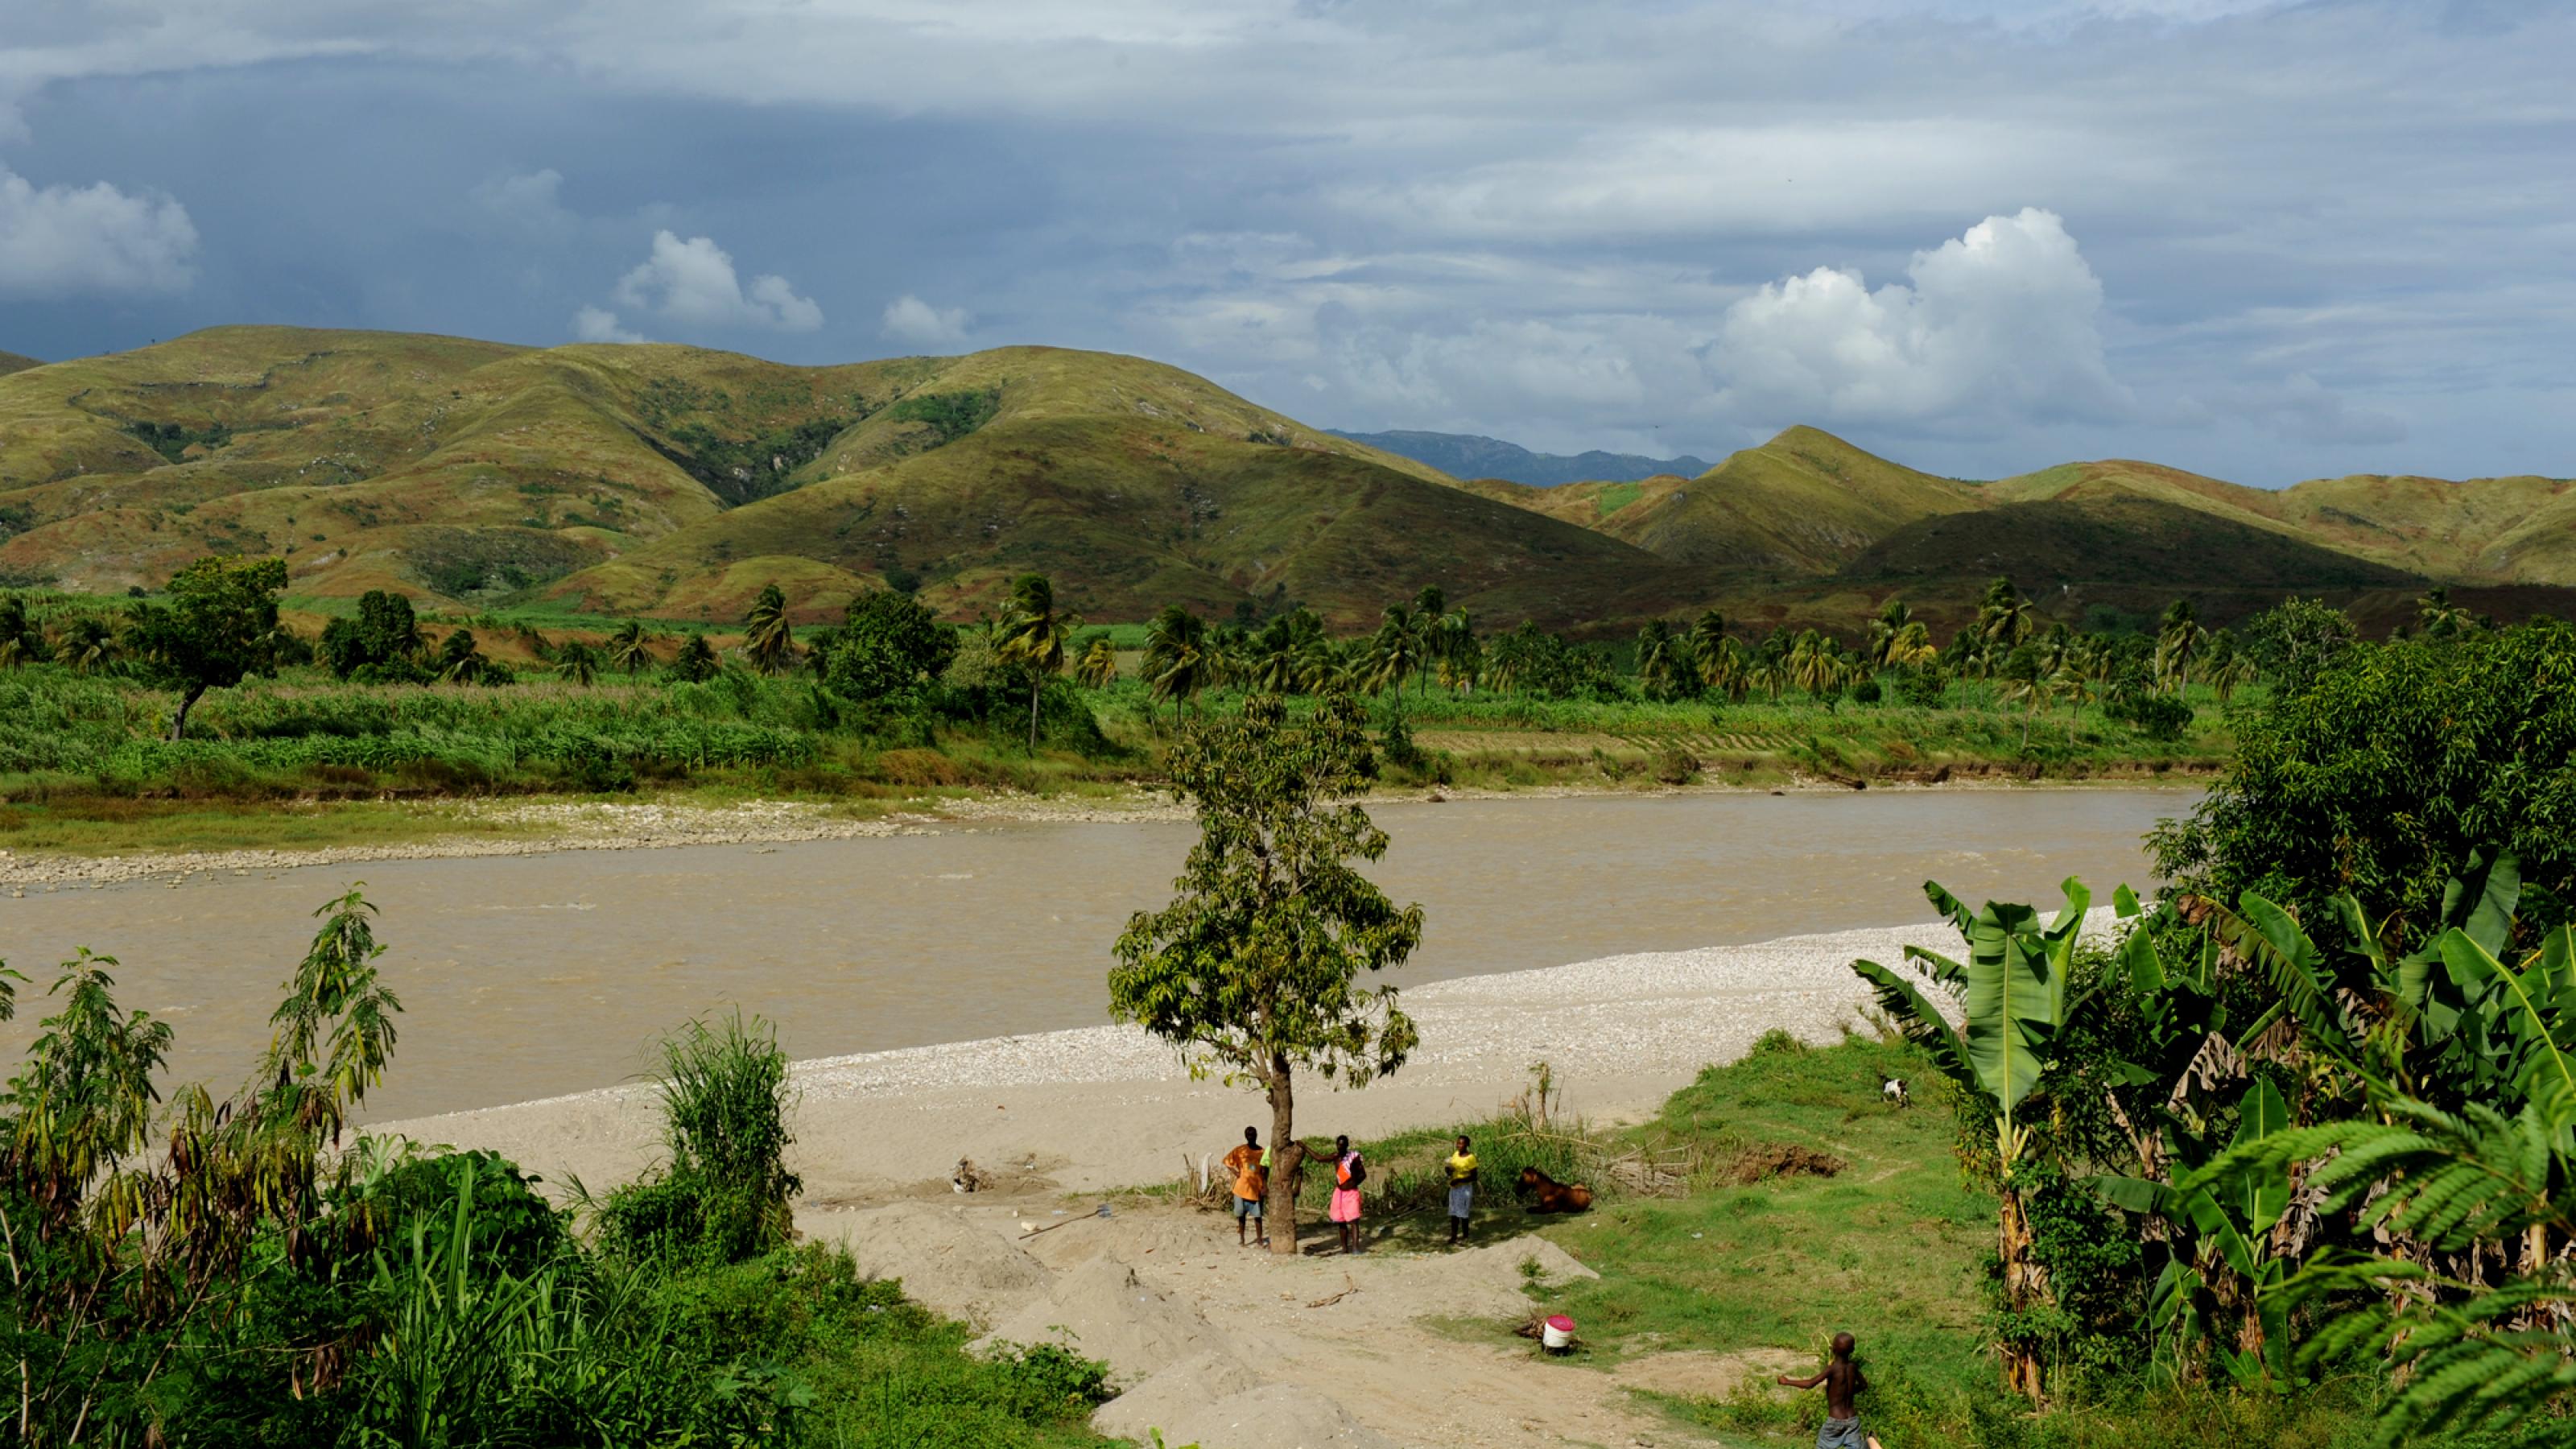 Das Bild zeigt eine Flusslandschaft auf Haiti. Vor kahlen, grünen Bergen fließt ein mittelgroßer Fluss, der Artibonite. Einige Menschen sind auch im Bild, es ist nicht klar, was sie machen.